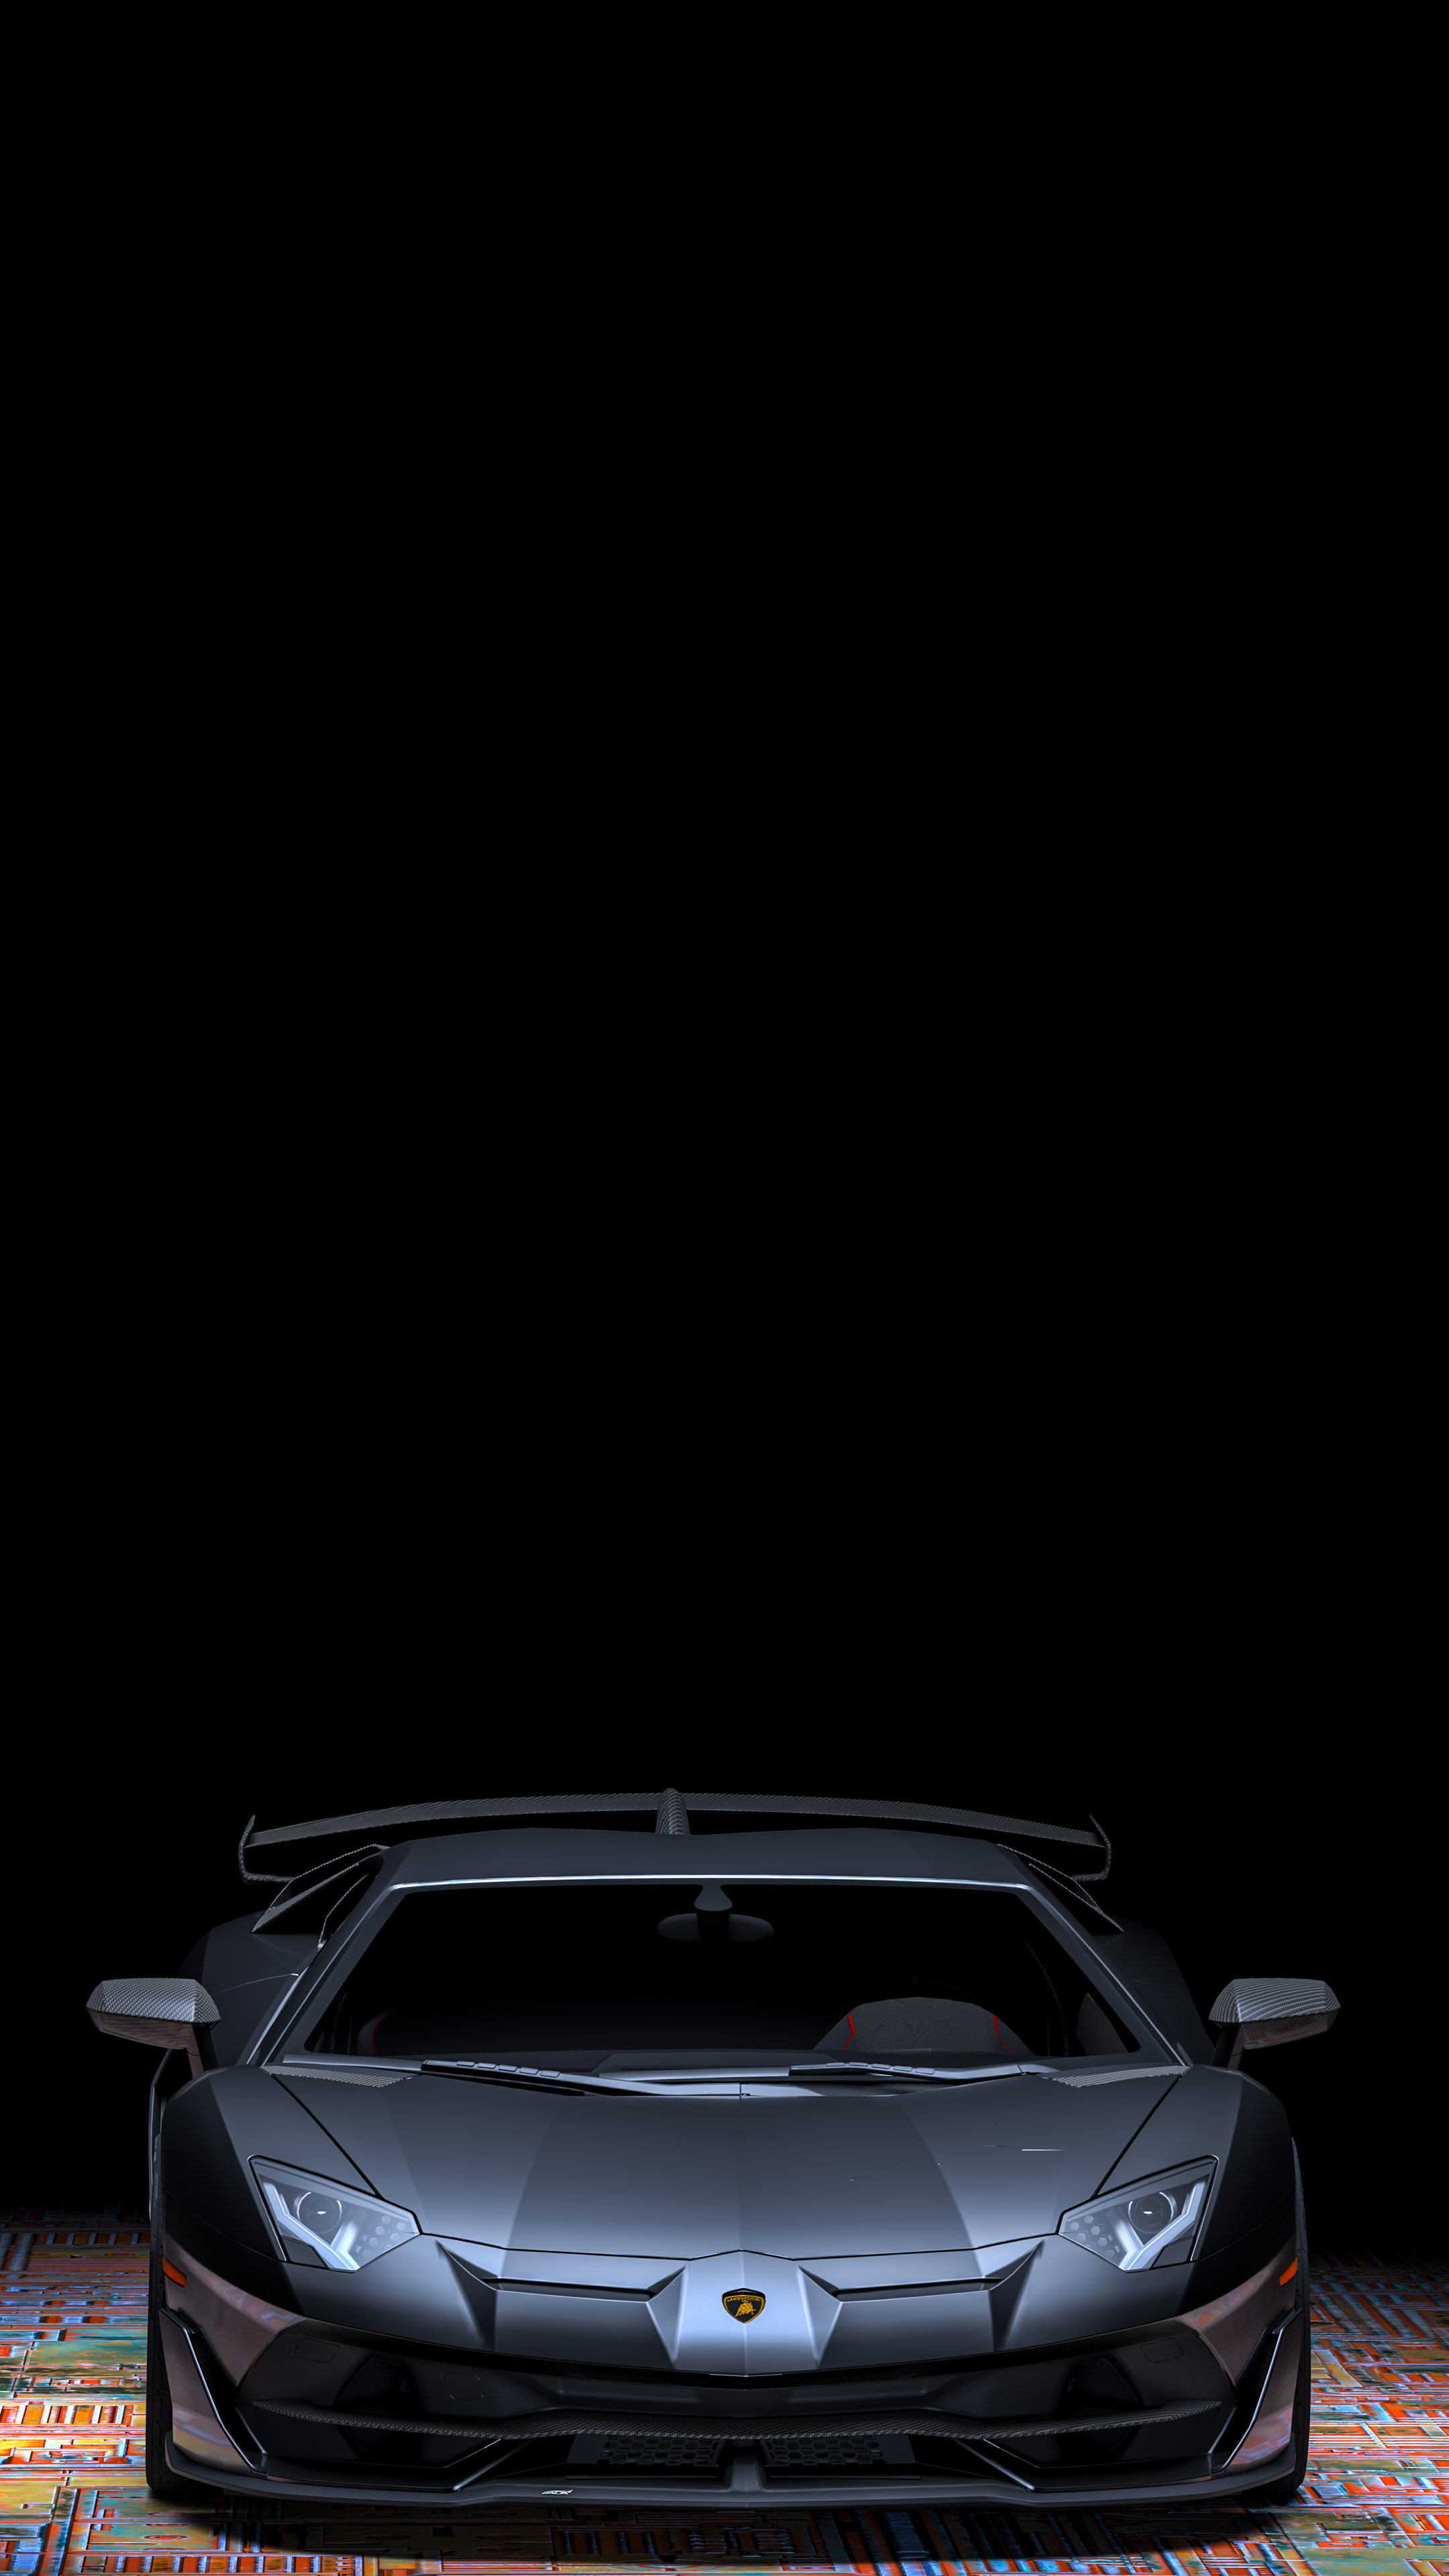 Capturez l'essence de la vitesse et de la puissance avec notre meilleur fond d'écran de voiture mettant en vedette la Lamborghini Aventador.